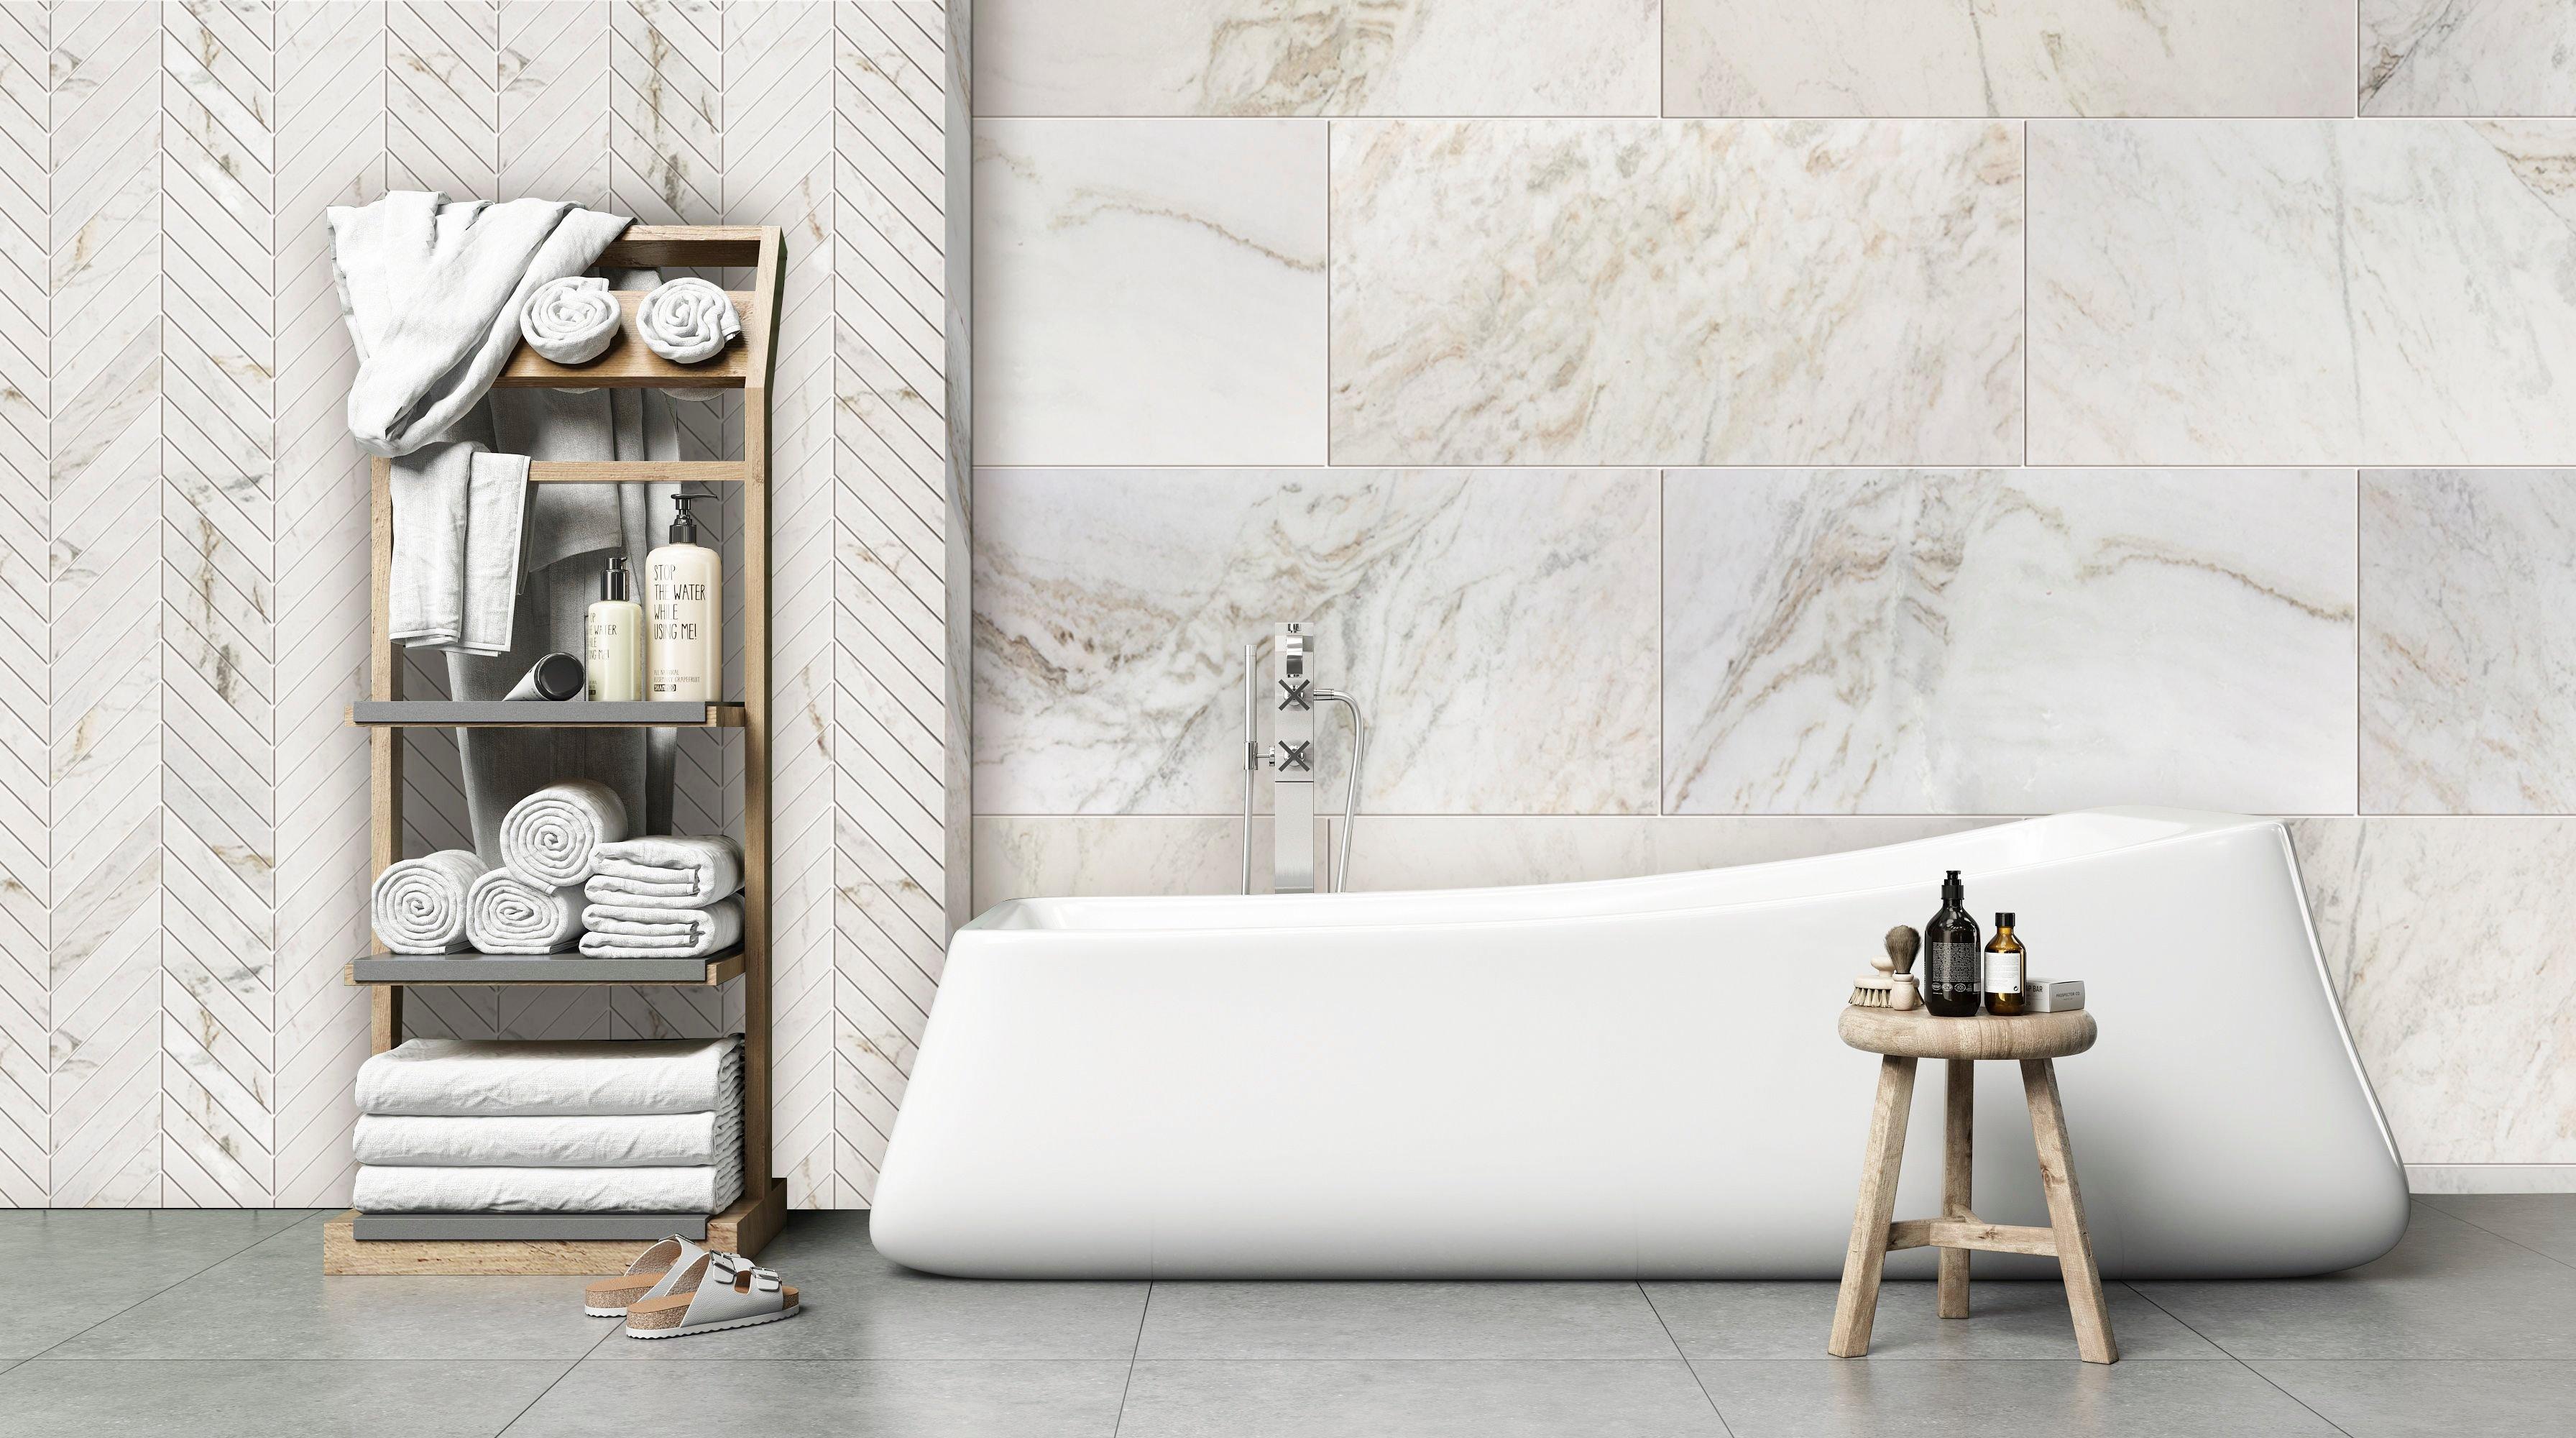 Bianco Orion Polished Marble Tile